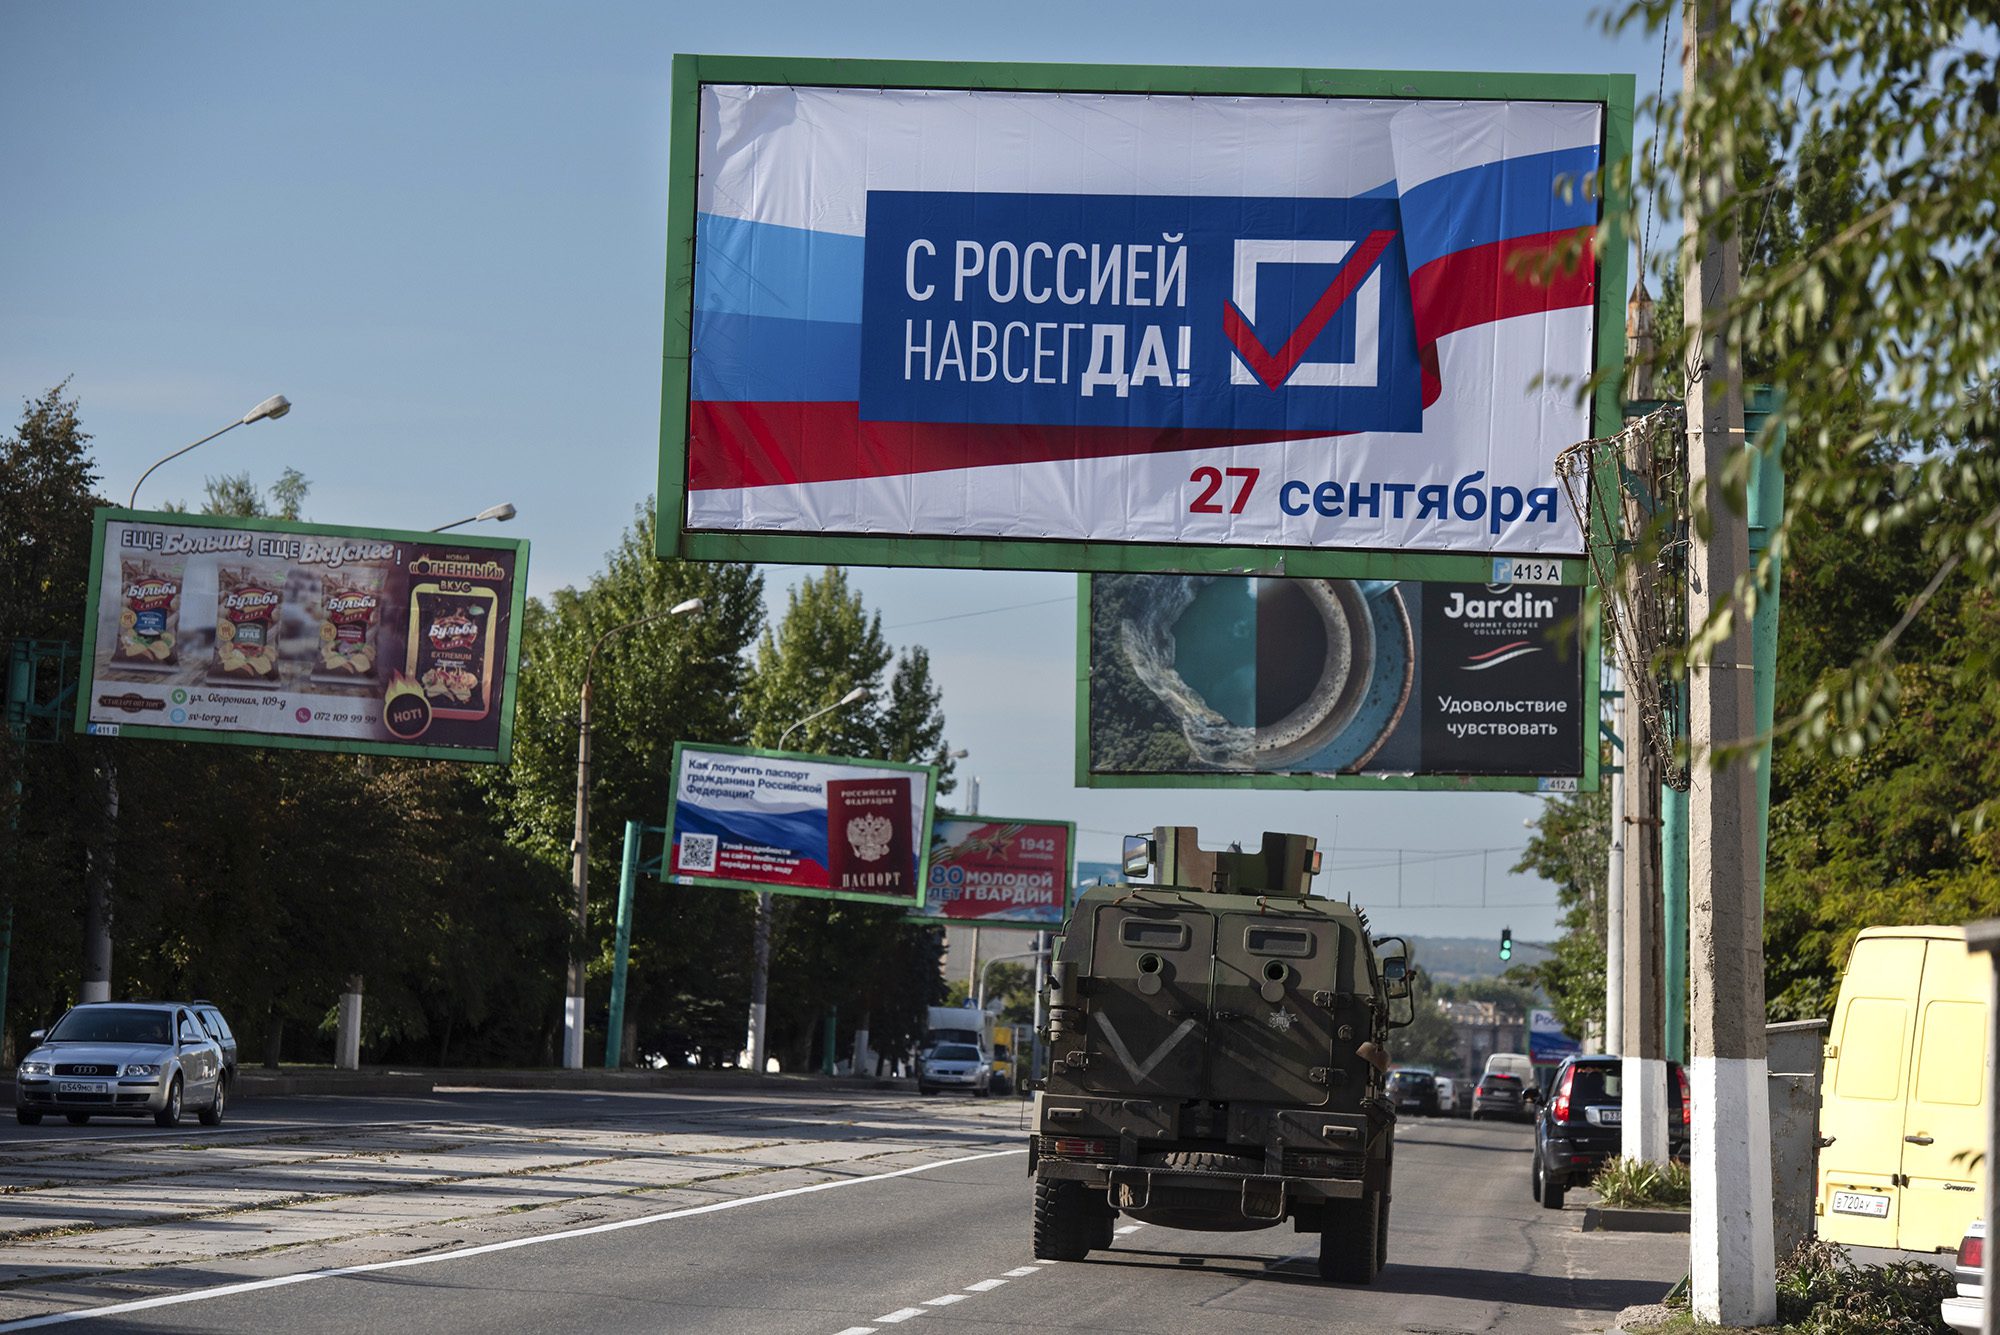 Військова машина біжить по вулиці з рекламним щитом "З Росією назавжди 27 вересня" Перед референдумом у Луганську, східна Україна, 22 вересня.